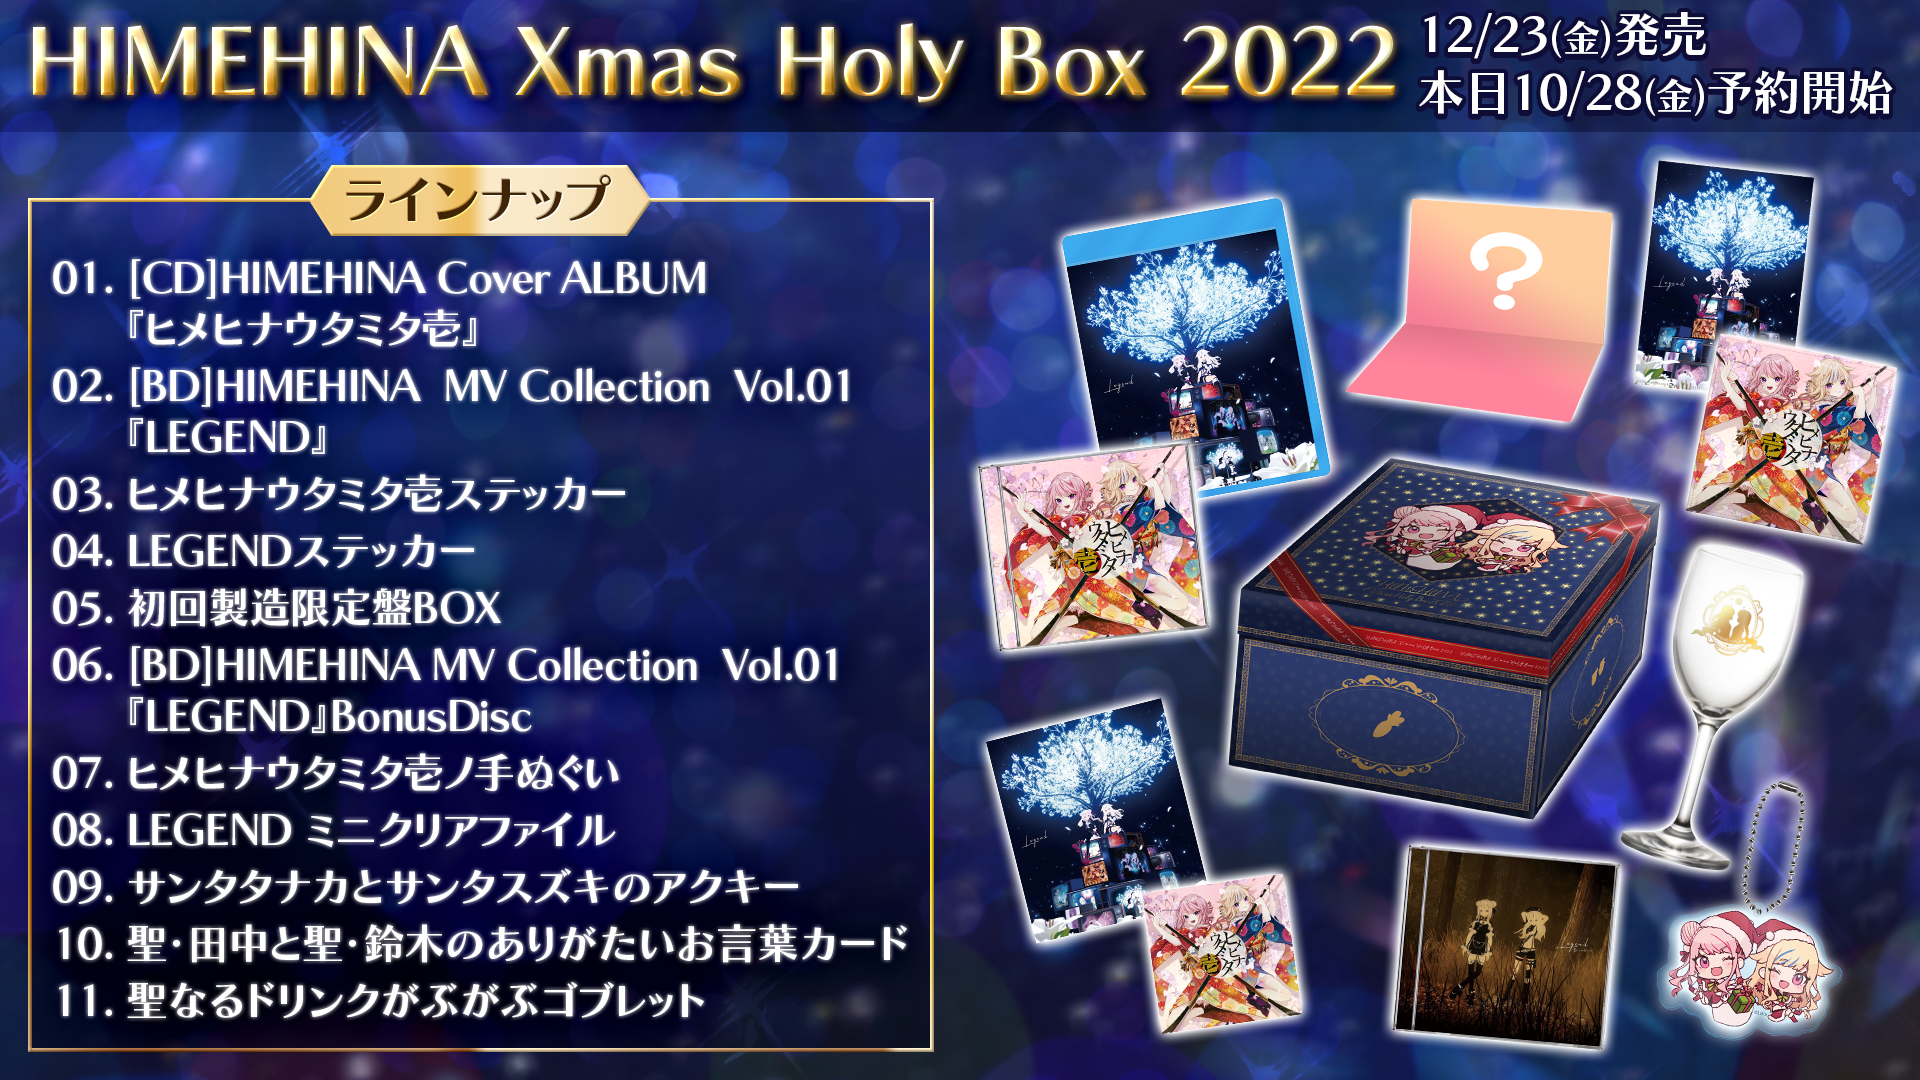 Xmas Holy Box 2022